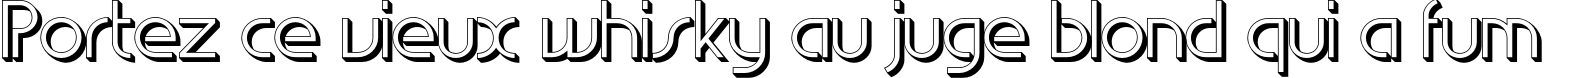 Пример написания шрифтом EdgeLineShadow текста на французском